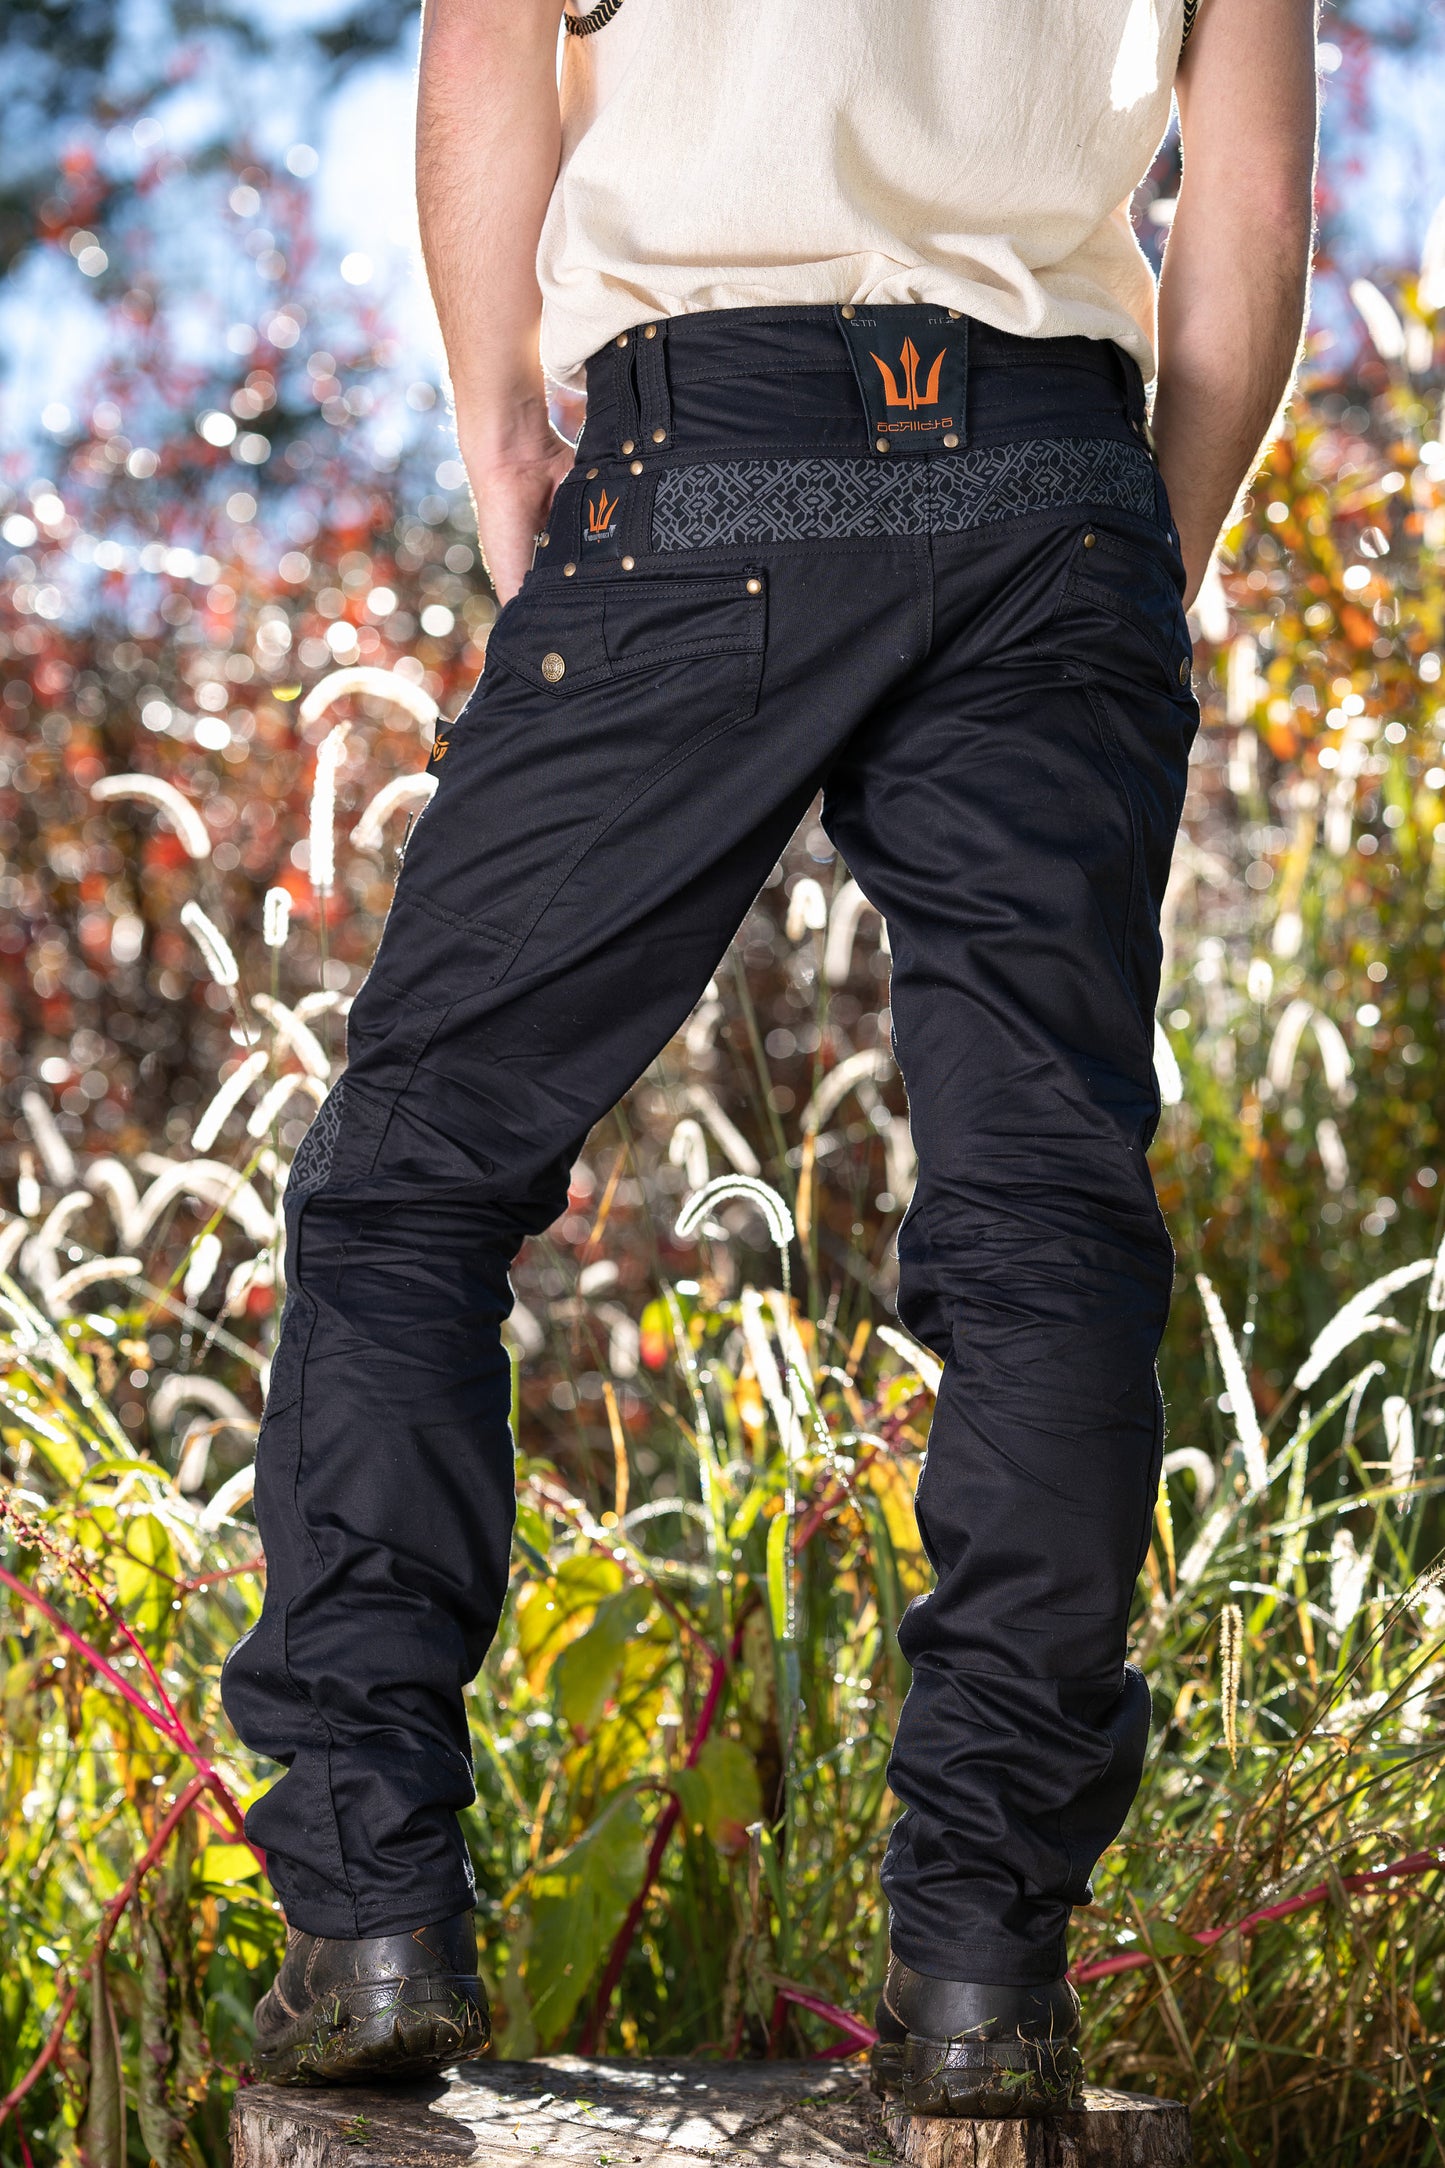 Osmosis 黑色工装男式部落裤子长款实用战术功能多口袋部落装备狂欢舒适燃烧后宫裤 AJJAYA